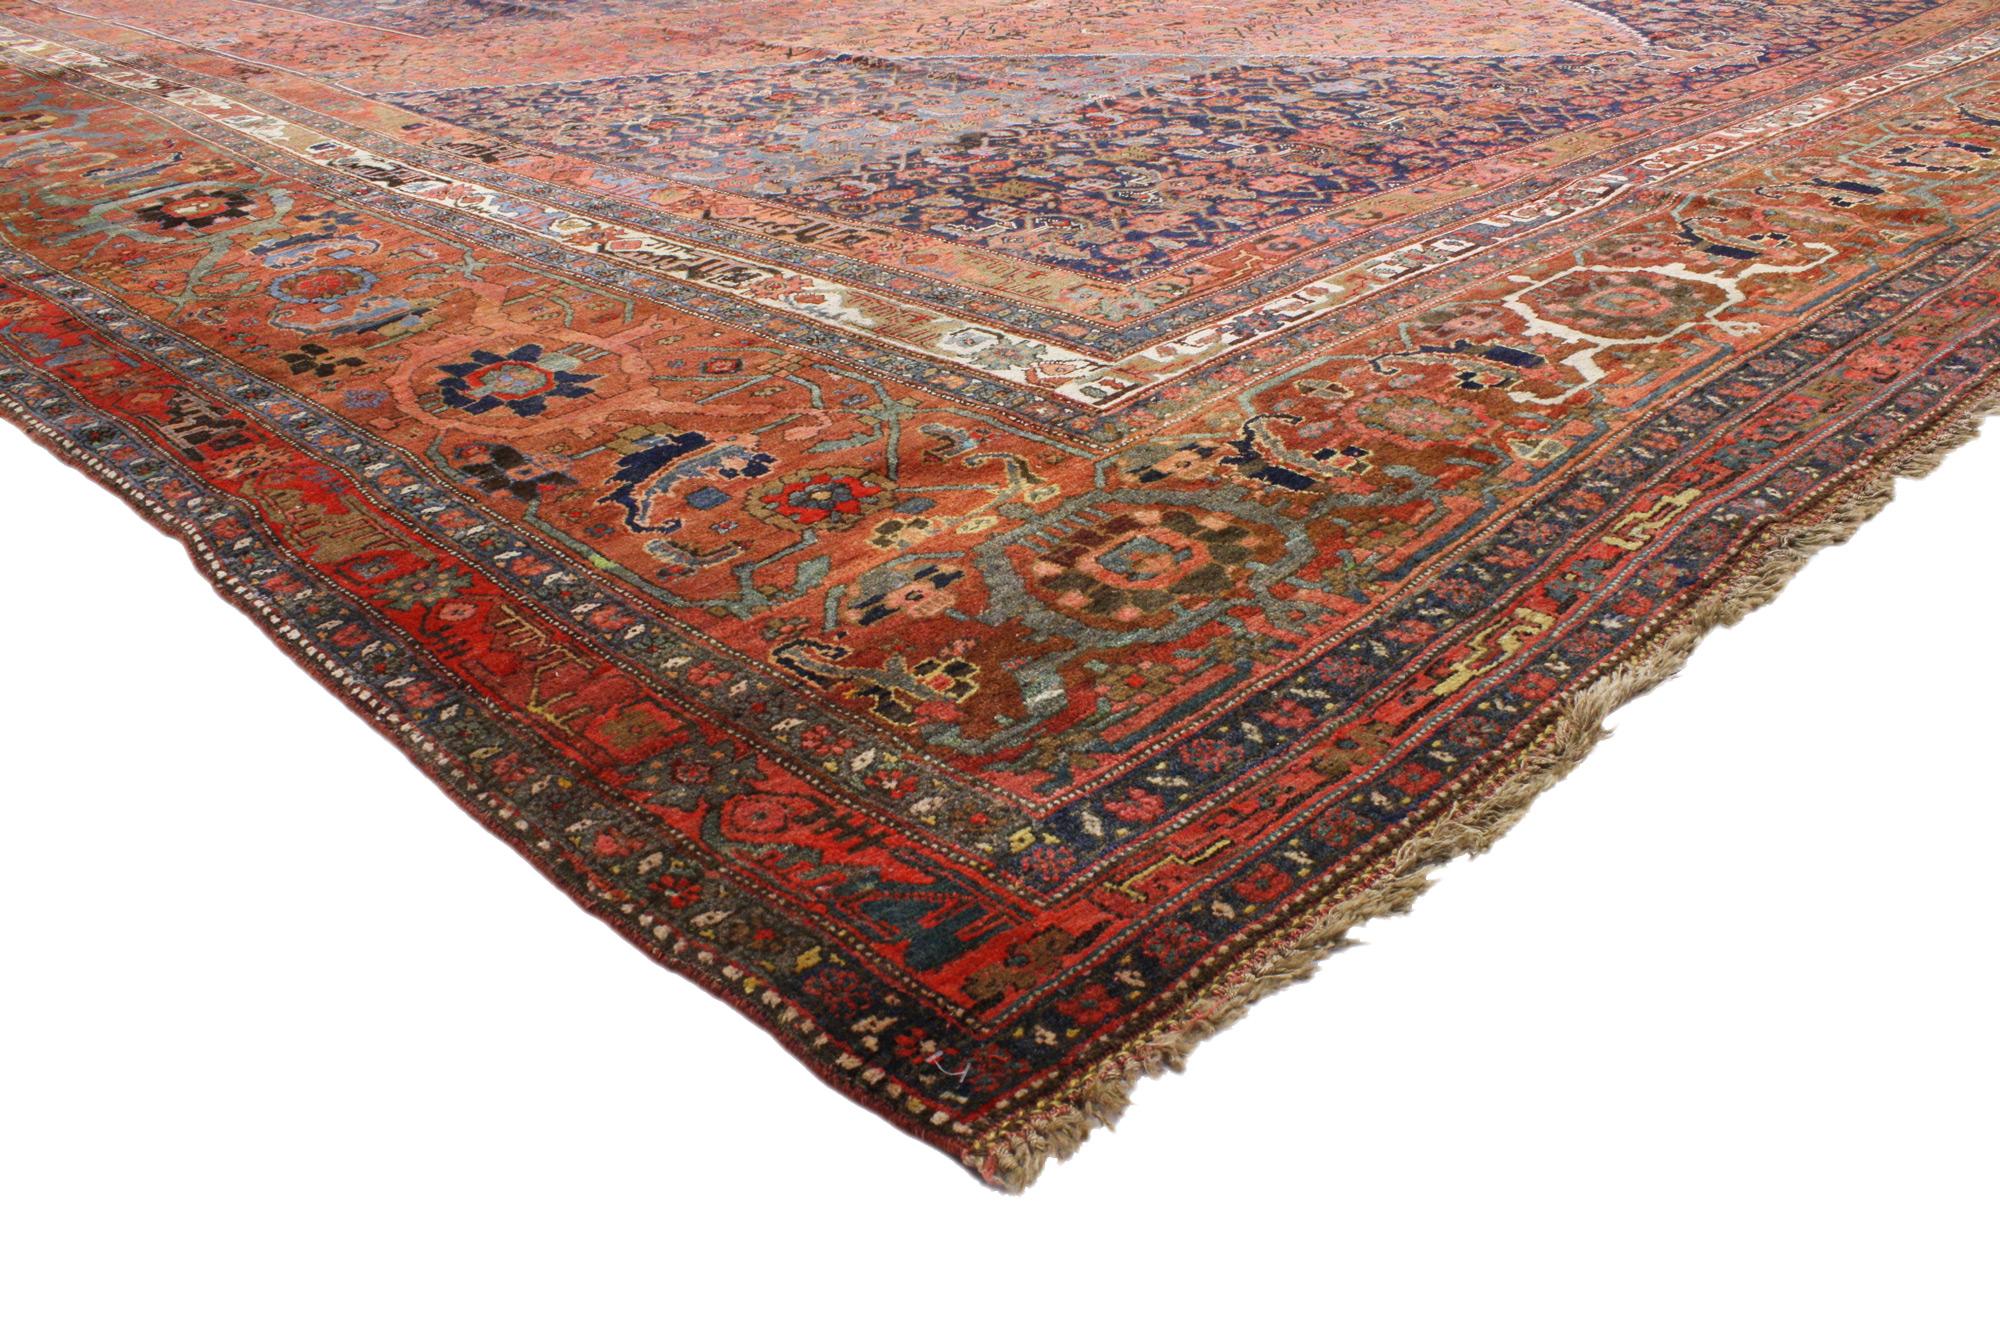 73125 Übergroßer antiker persischer Bijar-Teppich, 15'01 x 26'01. 
Dieser handgeknüpfte, antike Bijar-Teppich aus Wolle in Übergröße ist geschickt komponiert und ausgewogen und verleiht ihm einen zeitlosen, gepflegten Look, der Wärme und